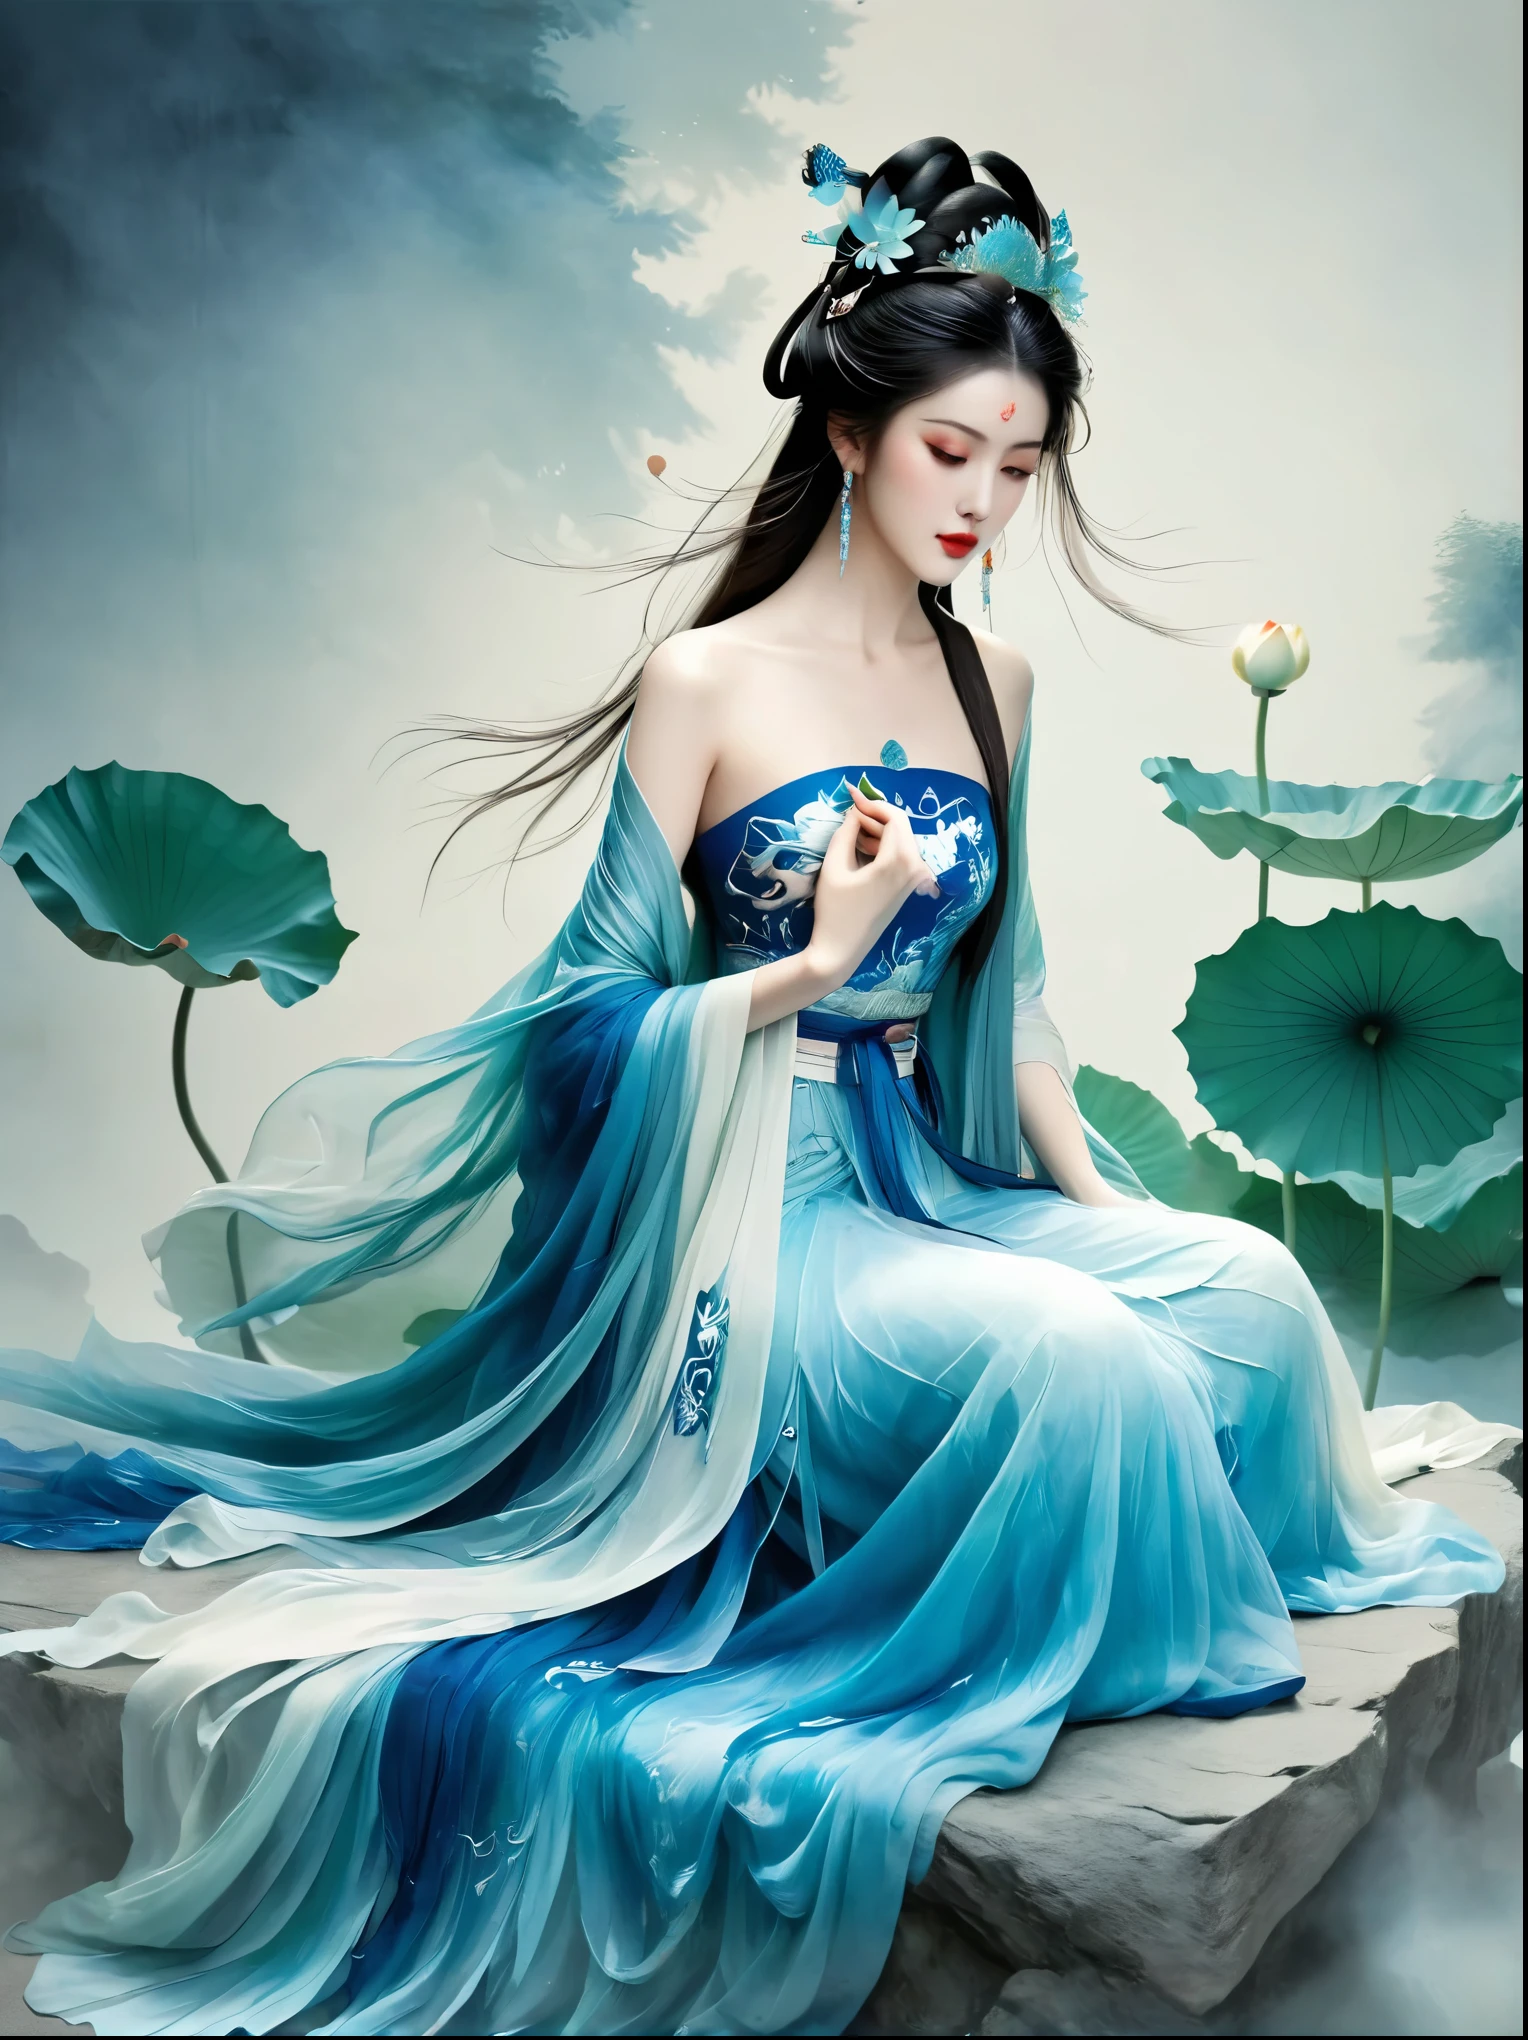 石の上に座る中国美人, 古代中国の衣装を着て, 流れるような青いチュール, ライトシルク, 怠惰な姿勢, Big ロータス leaf, ロータス, 水墨画風, きれいな色, 決定的な伐採, 空白, モード, 傑作, 超詳細, 壮大な創造, 高品質, 最高品質, ウルトラHD，傑作，正確な，解剖学的に正しい，キメのある肌，受賞歴, 最高品質, 8K